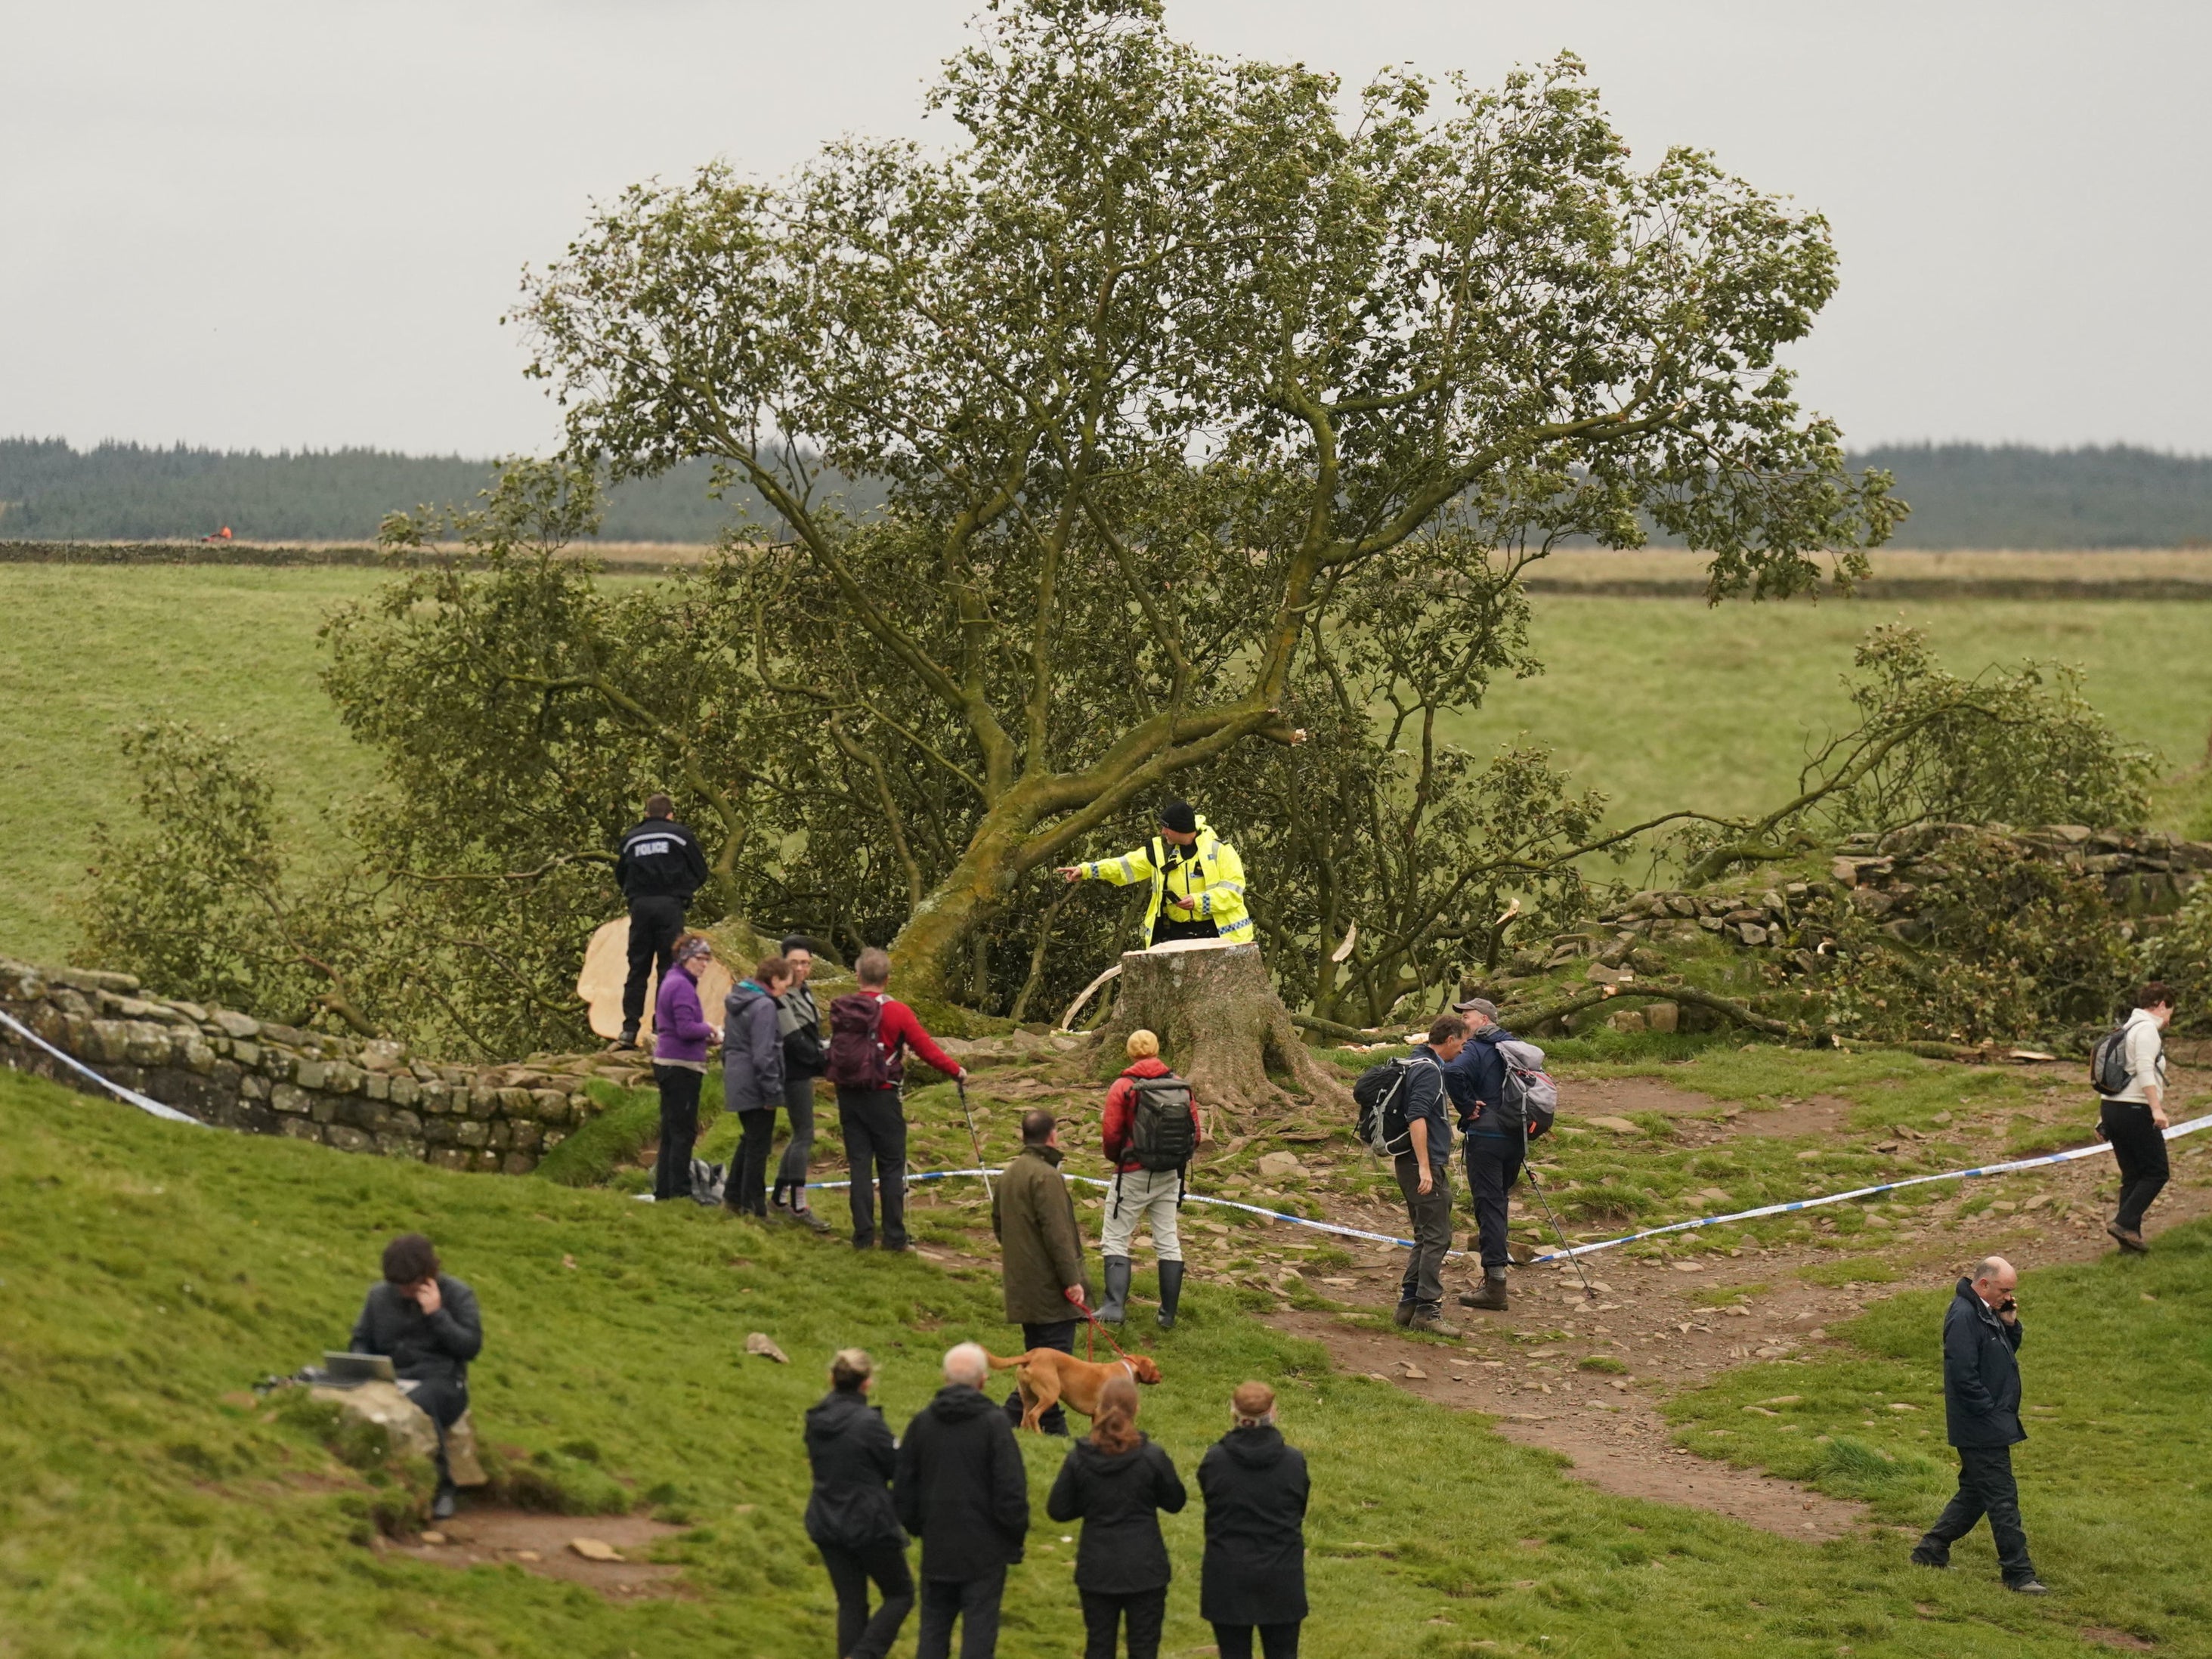 La gente mira el árbol de Sycamore Gap, junto al Muro de Adriano, en Northumberland después de que amaneciera tirado.